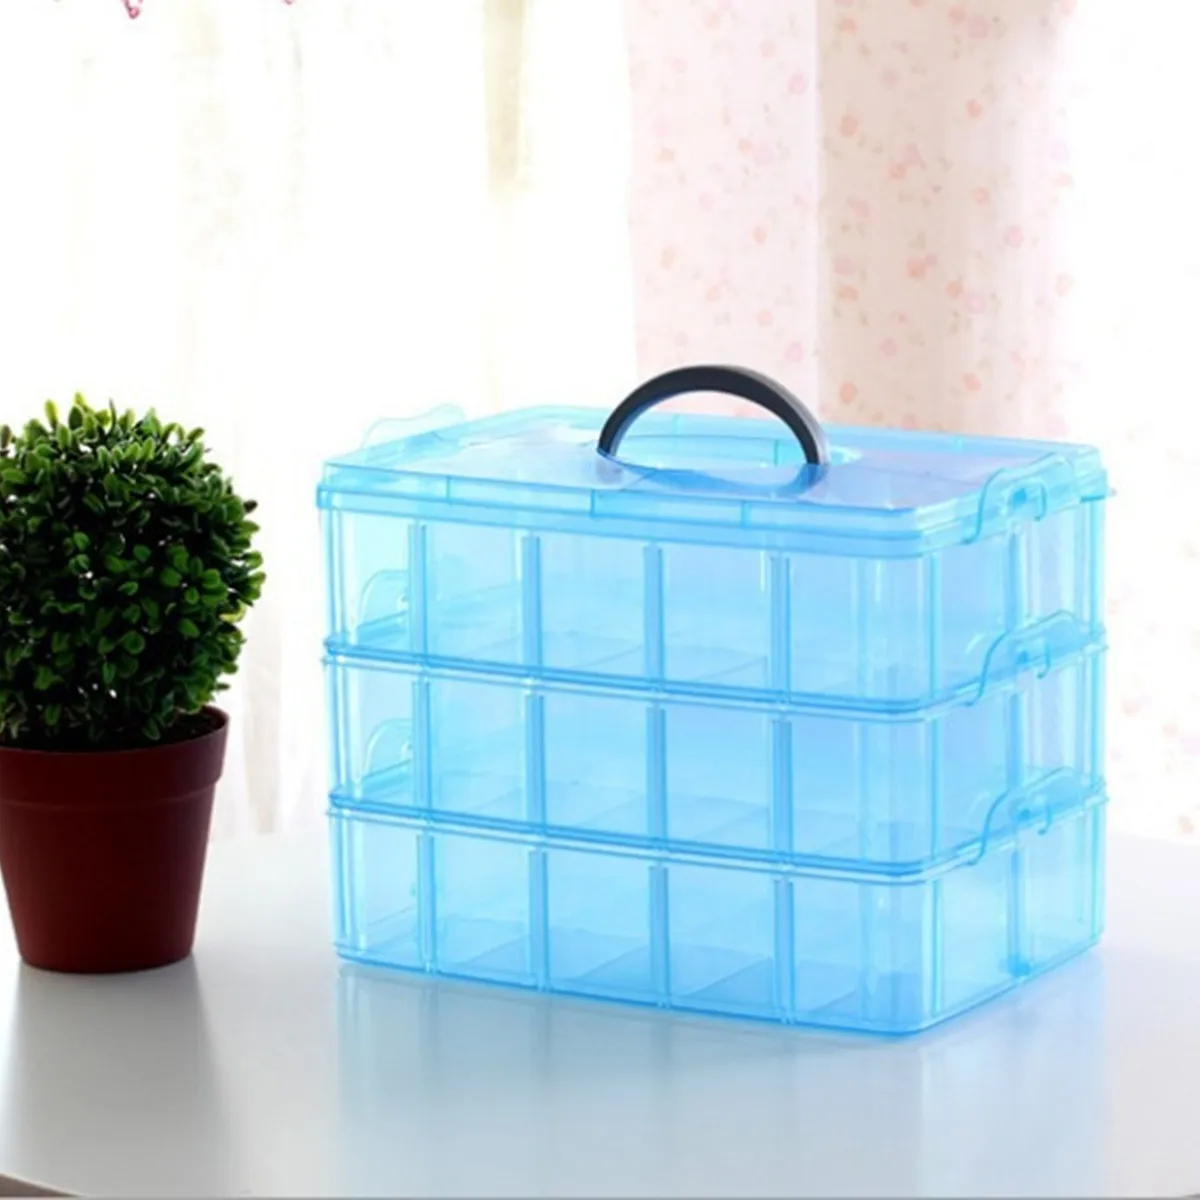 

30 Grids Stackable Plastic Storage Box Portable Detachable Home Organizer Transparent Makeup Organizer